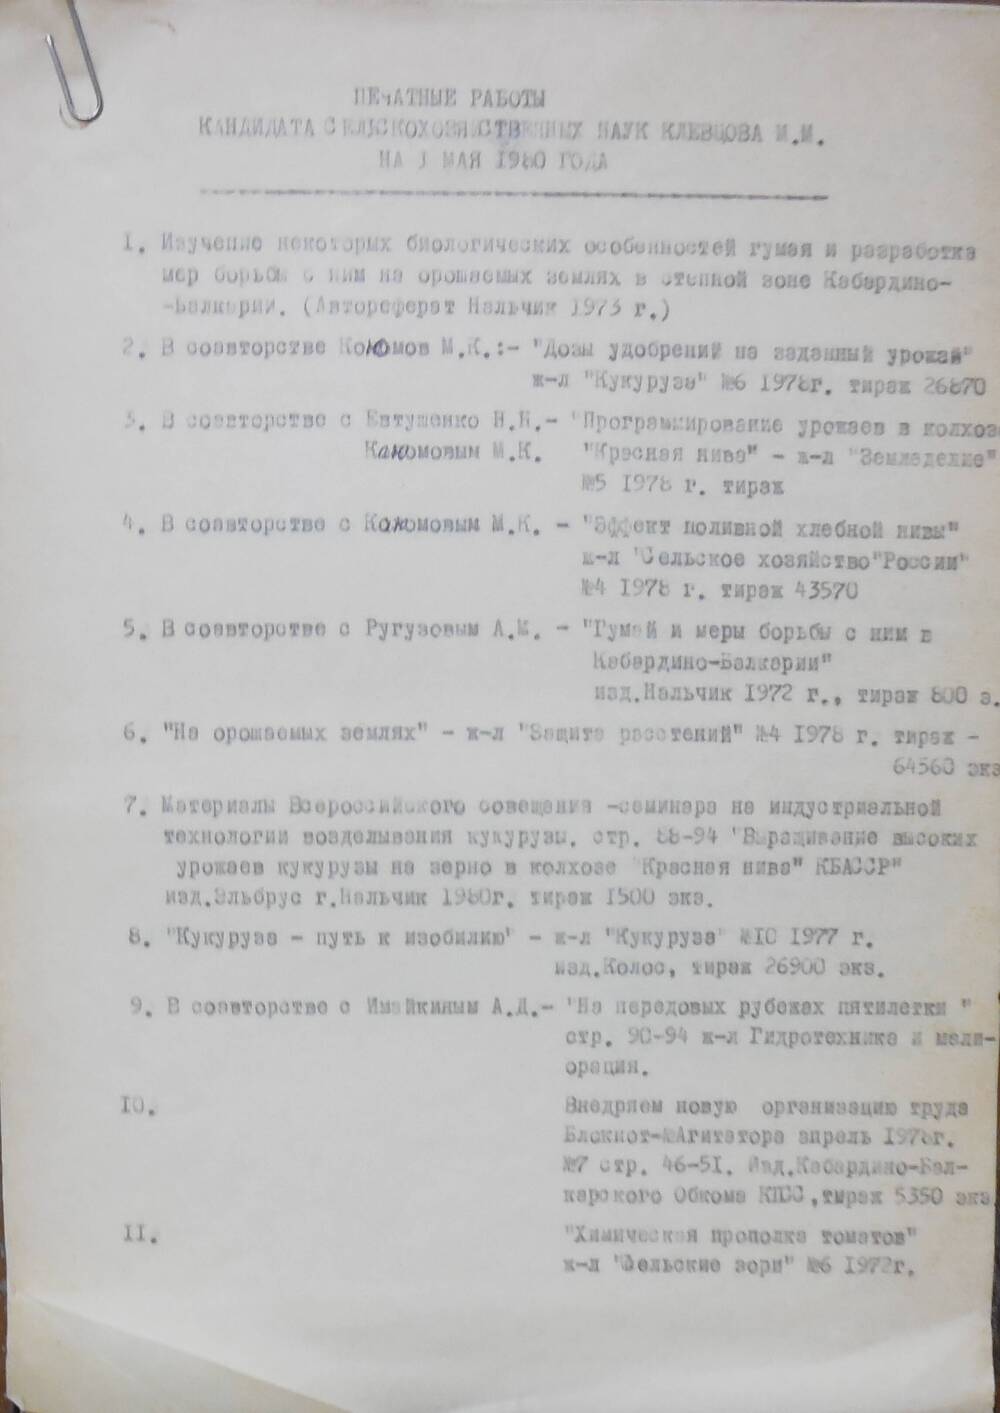 Список печатных работ Клевцова М,М.